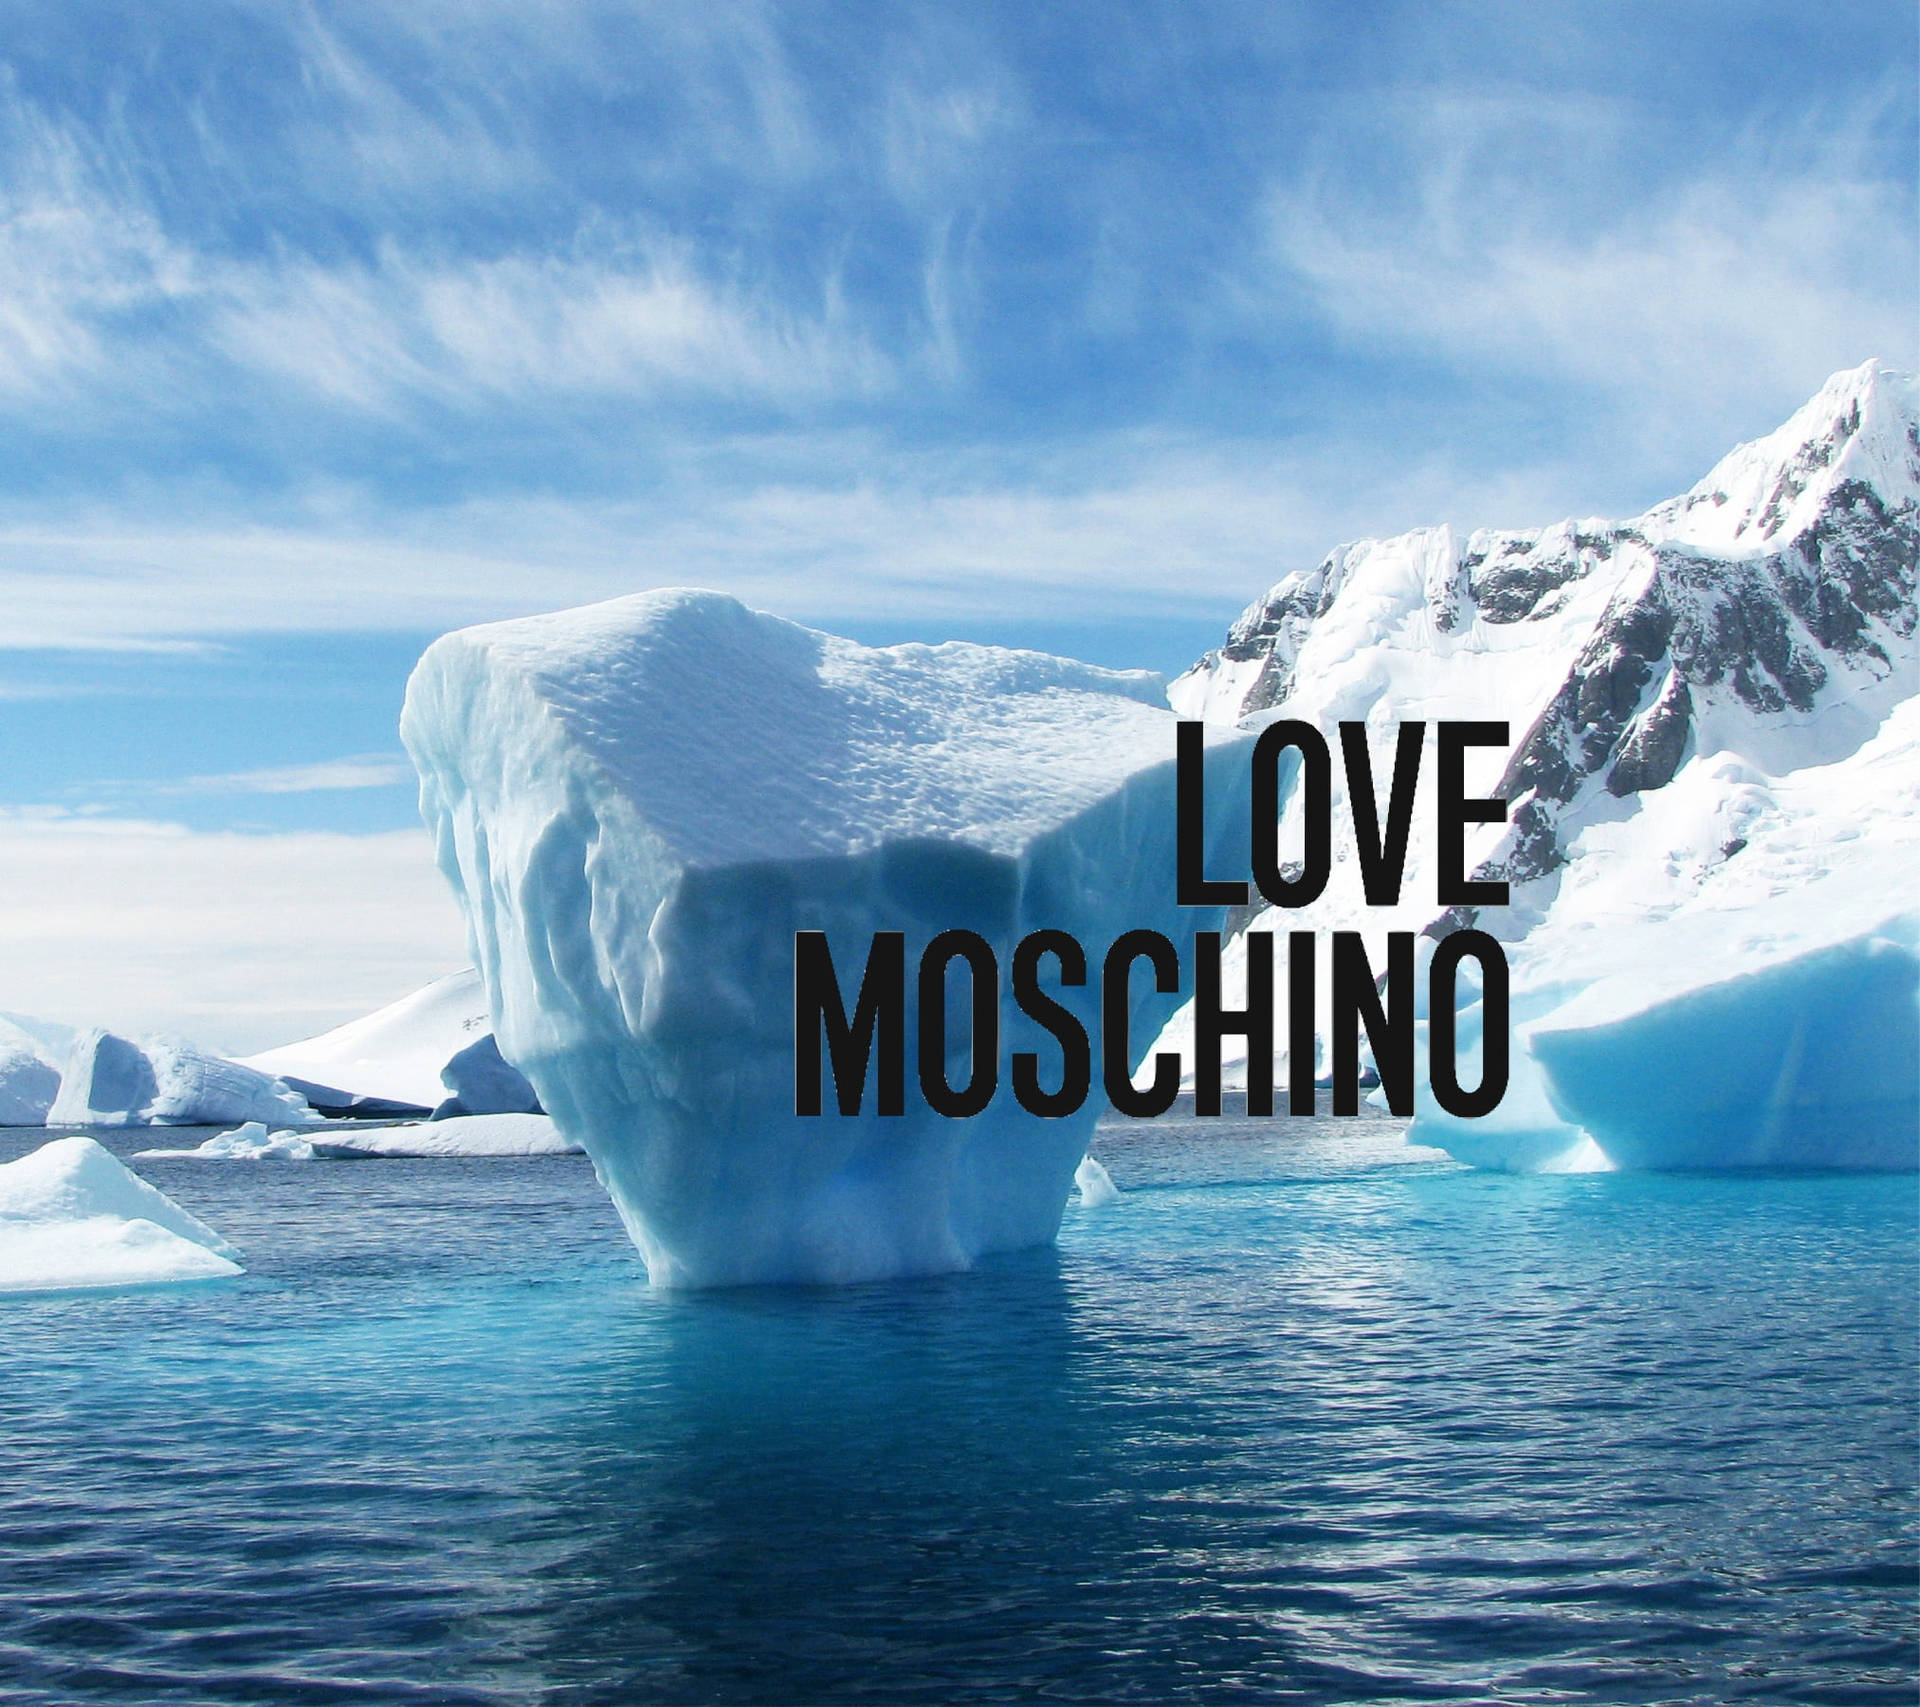 Love Moschino Iceberg Wallpaper